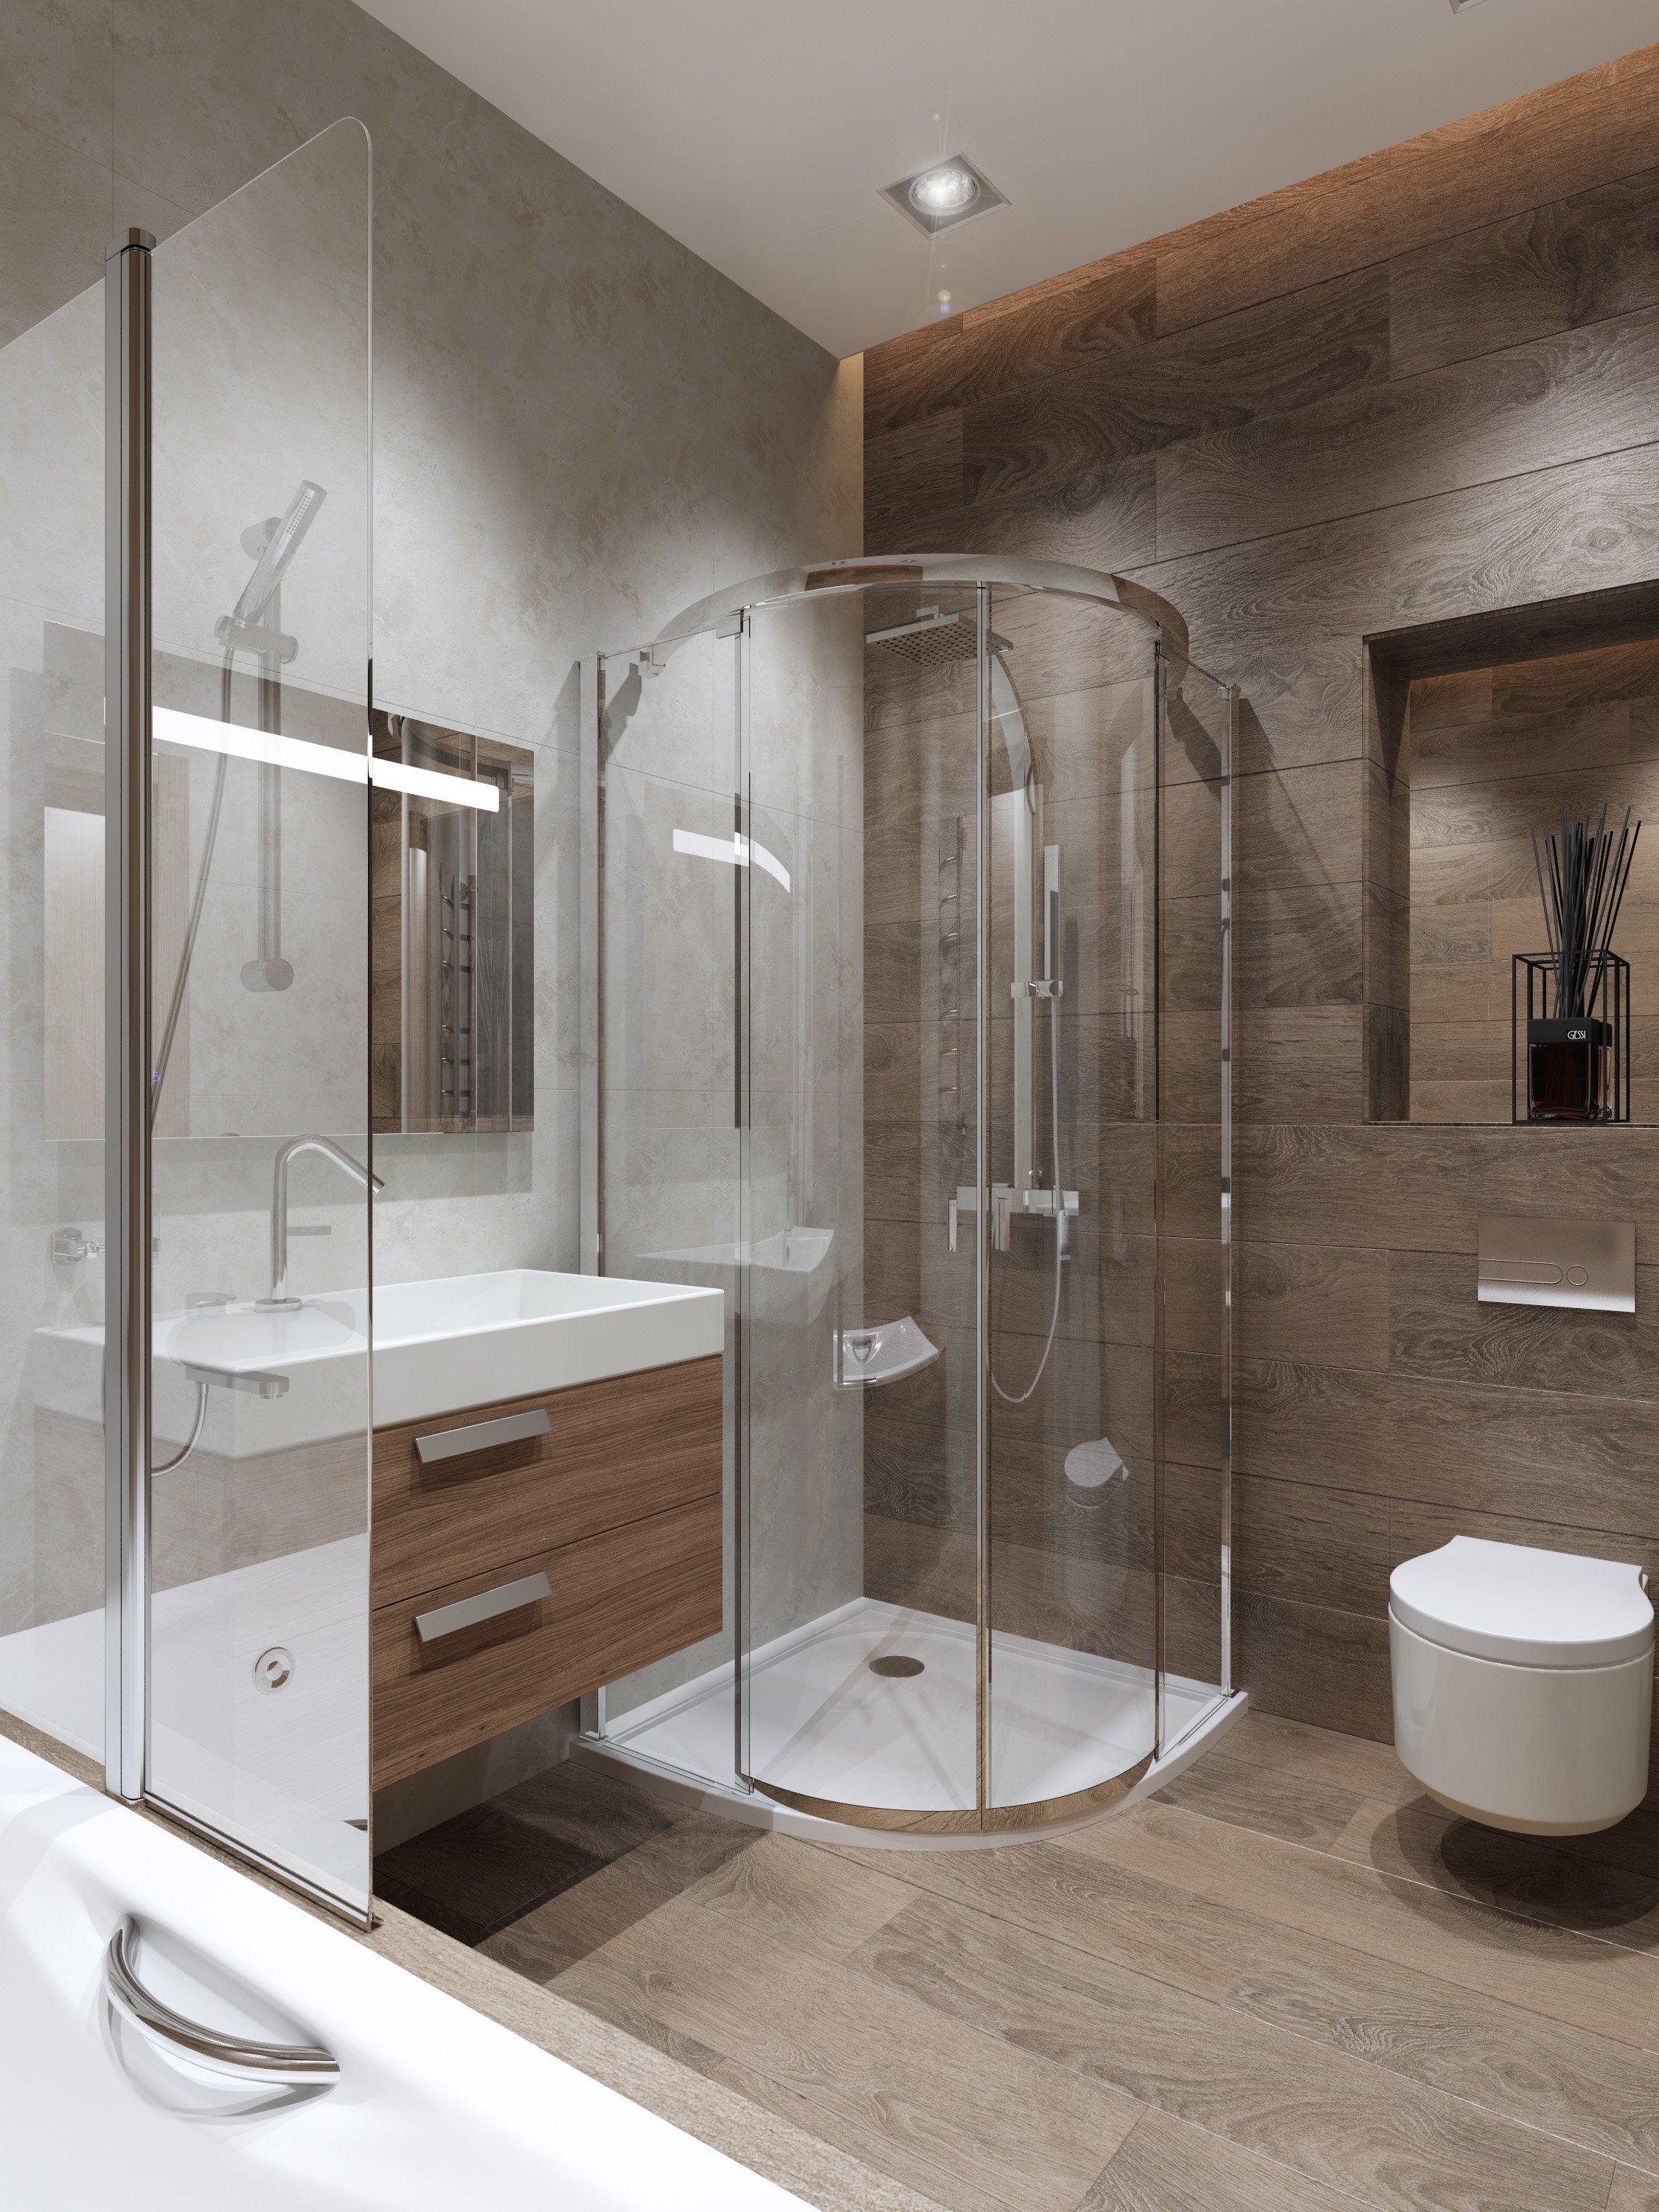 Дизайн ванной комнаты с душевой кабиной: варианты интерьера в квартире и частном доме